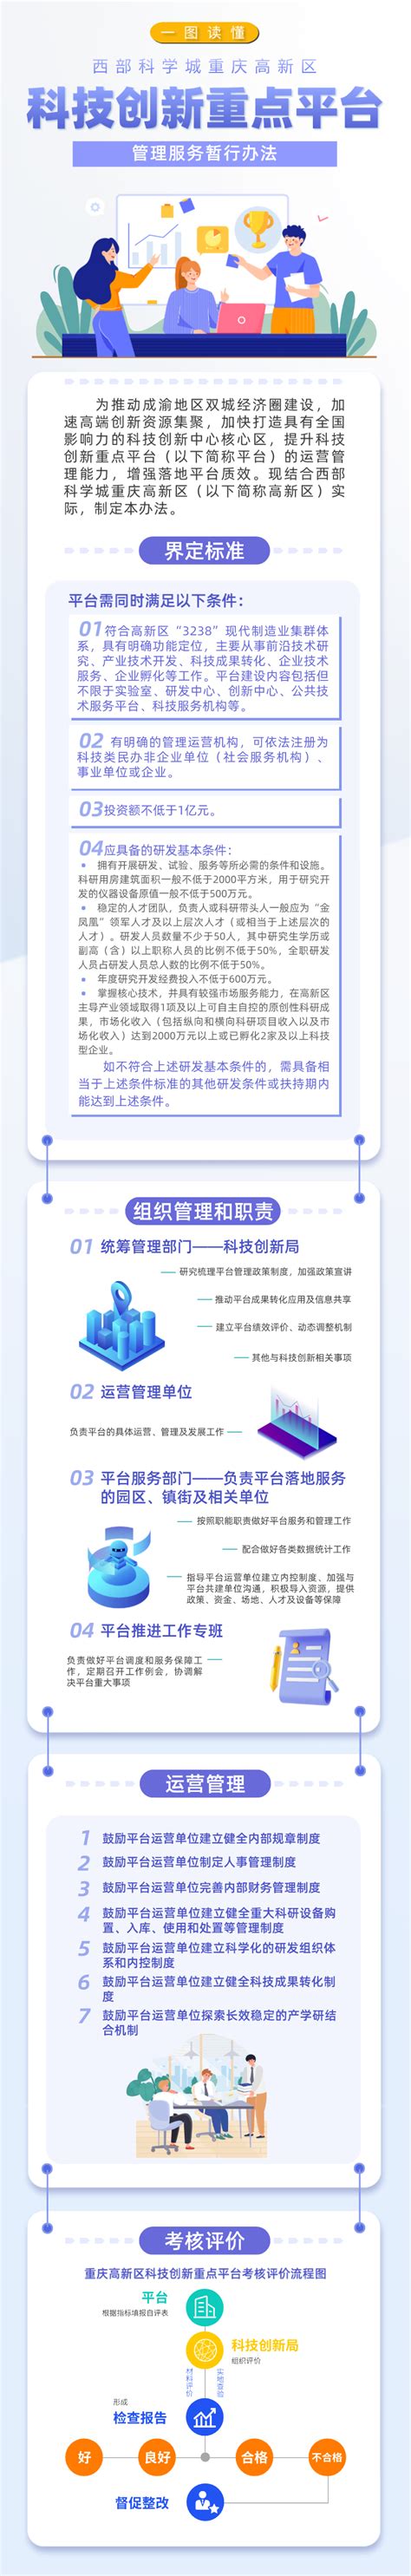 杭州高新区网络与通信设备基地--康利石材集团